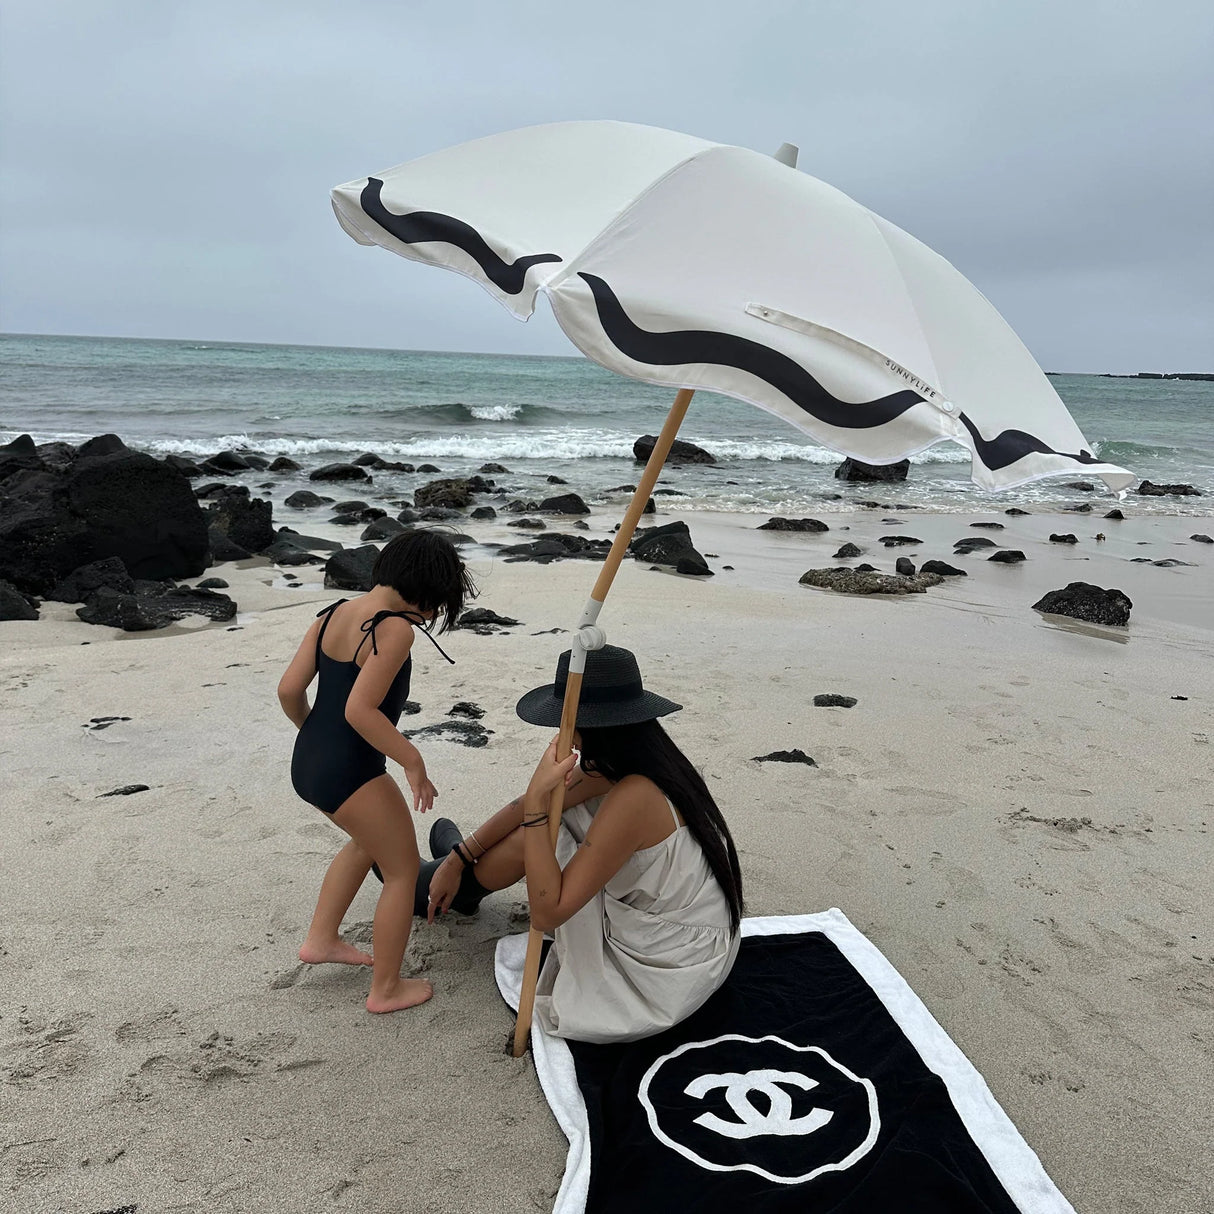 SUNNYLiFE Luxe Beach Umbrella